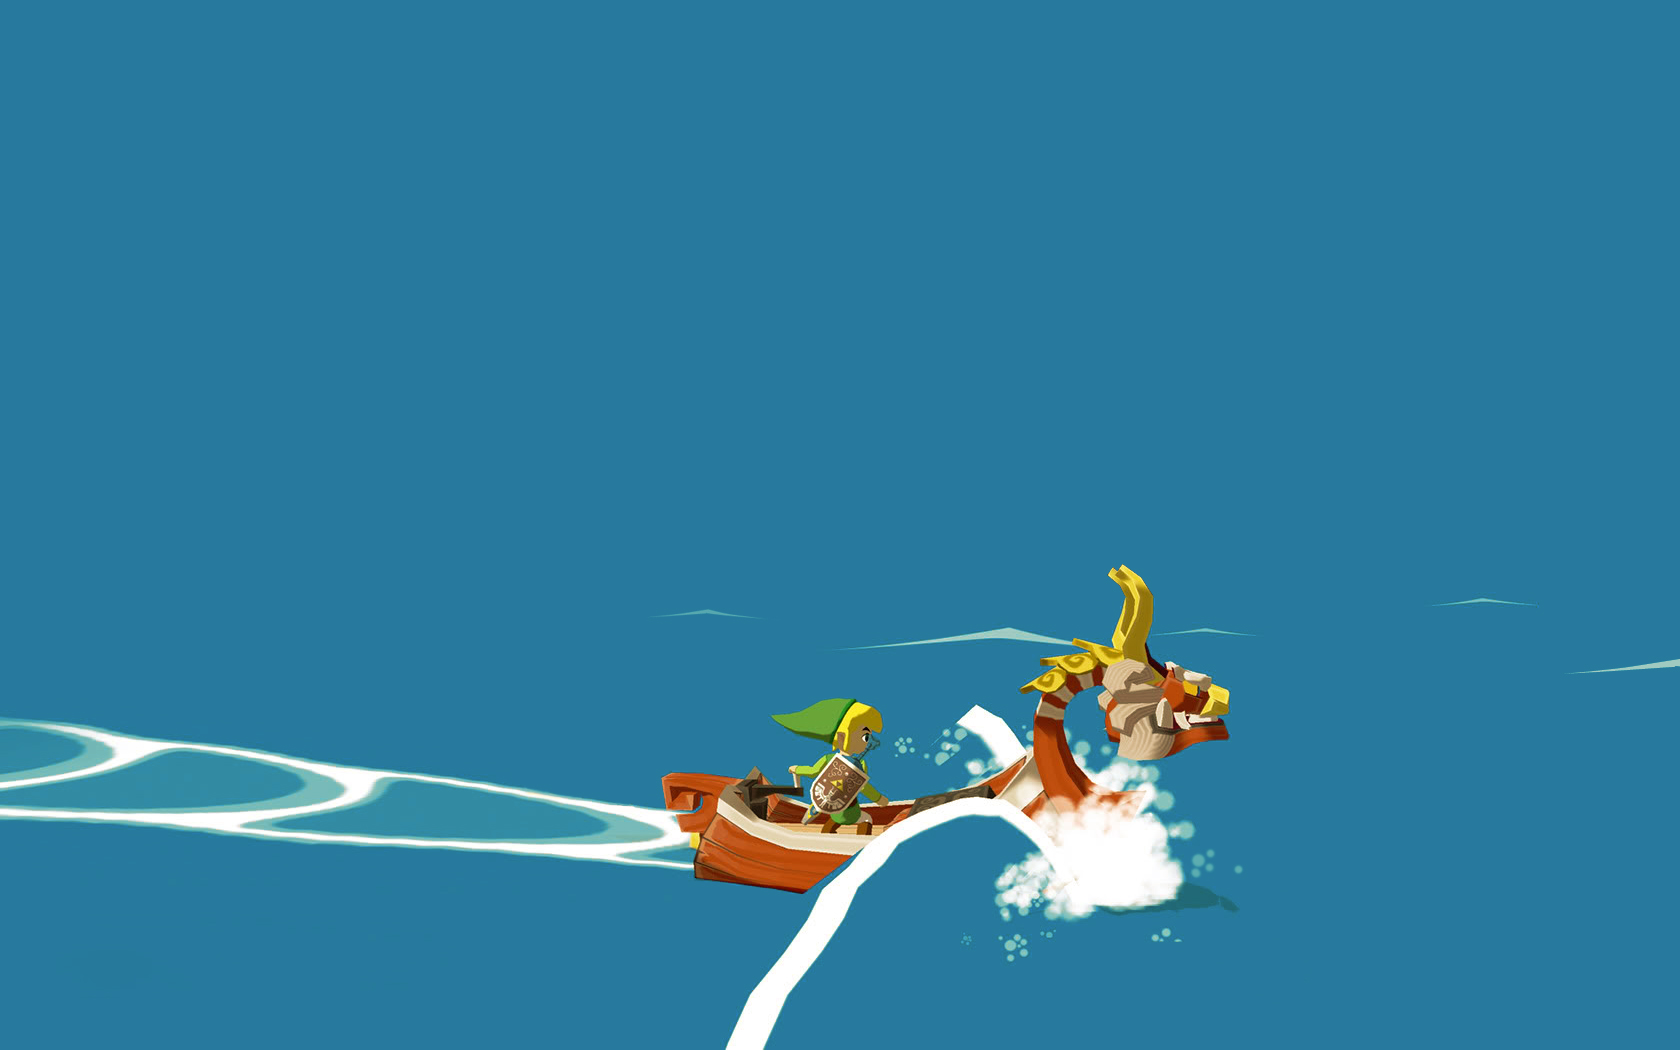 1001 Videojuegos que debes jugar: The Legend of Zelda - The Wind Waker 3